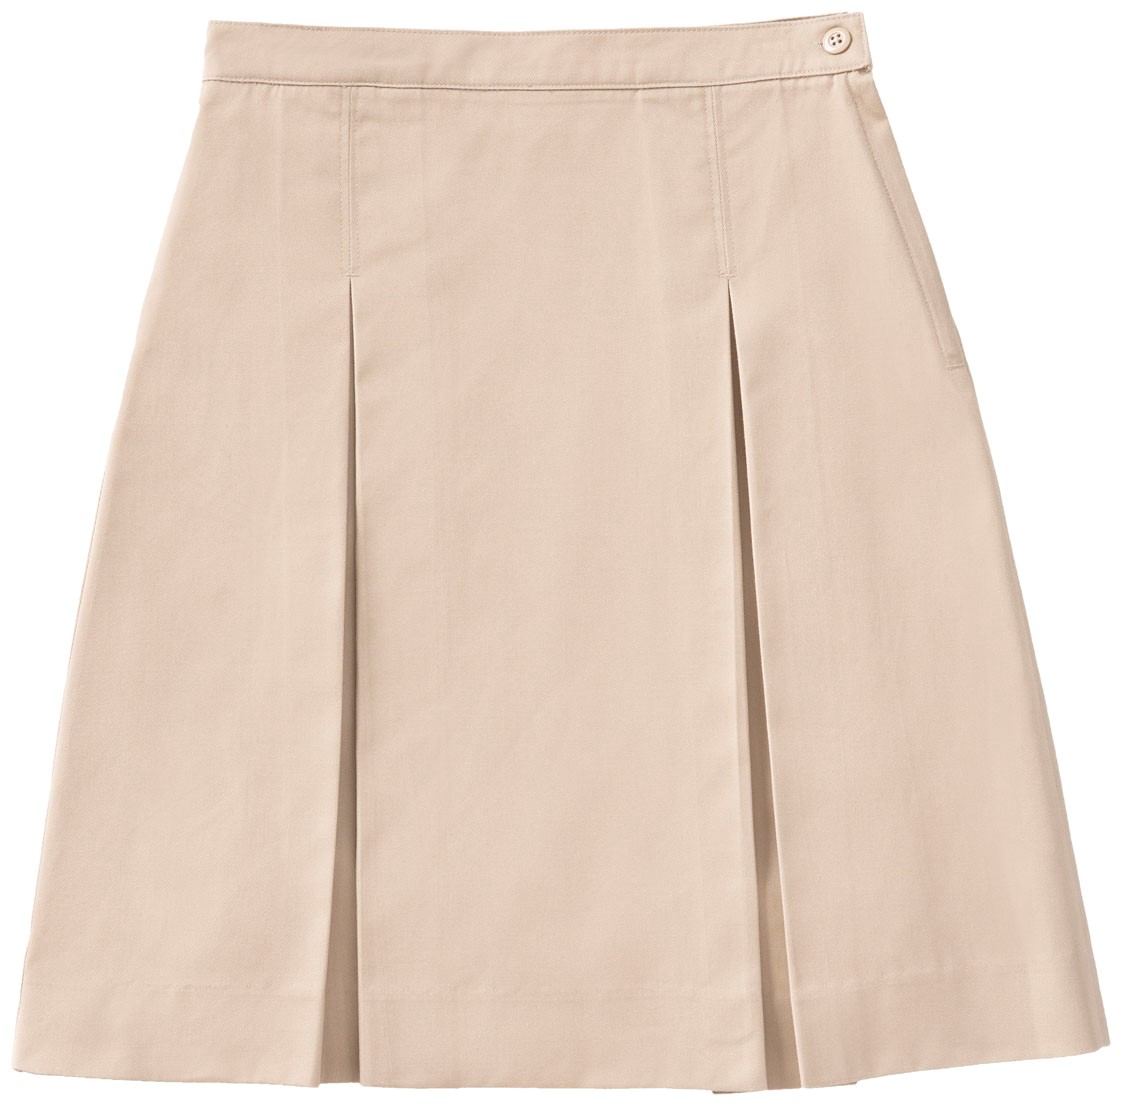 Girls Khaki skirt (6-18)